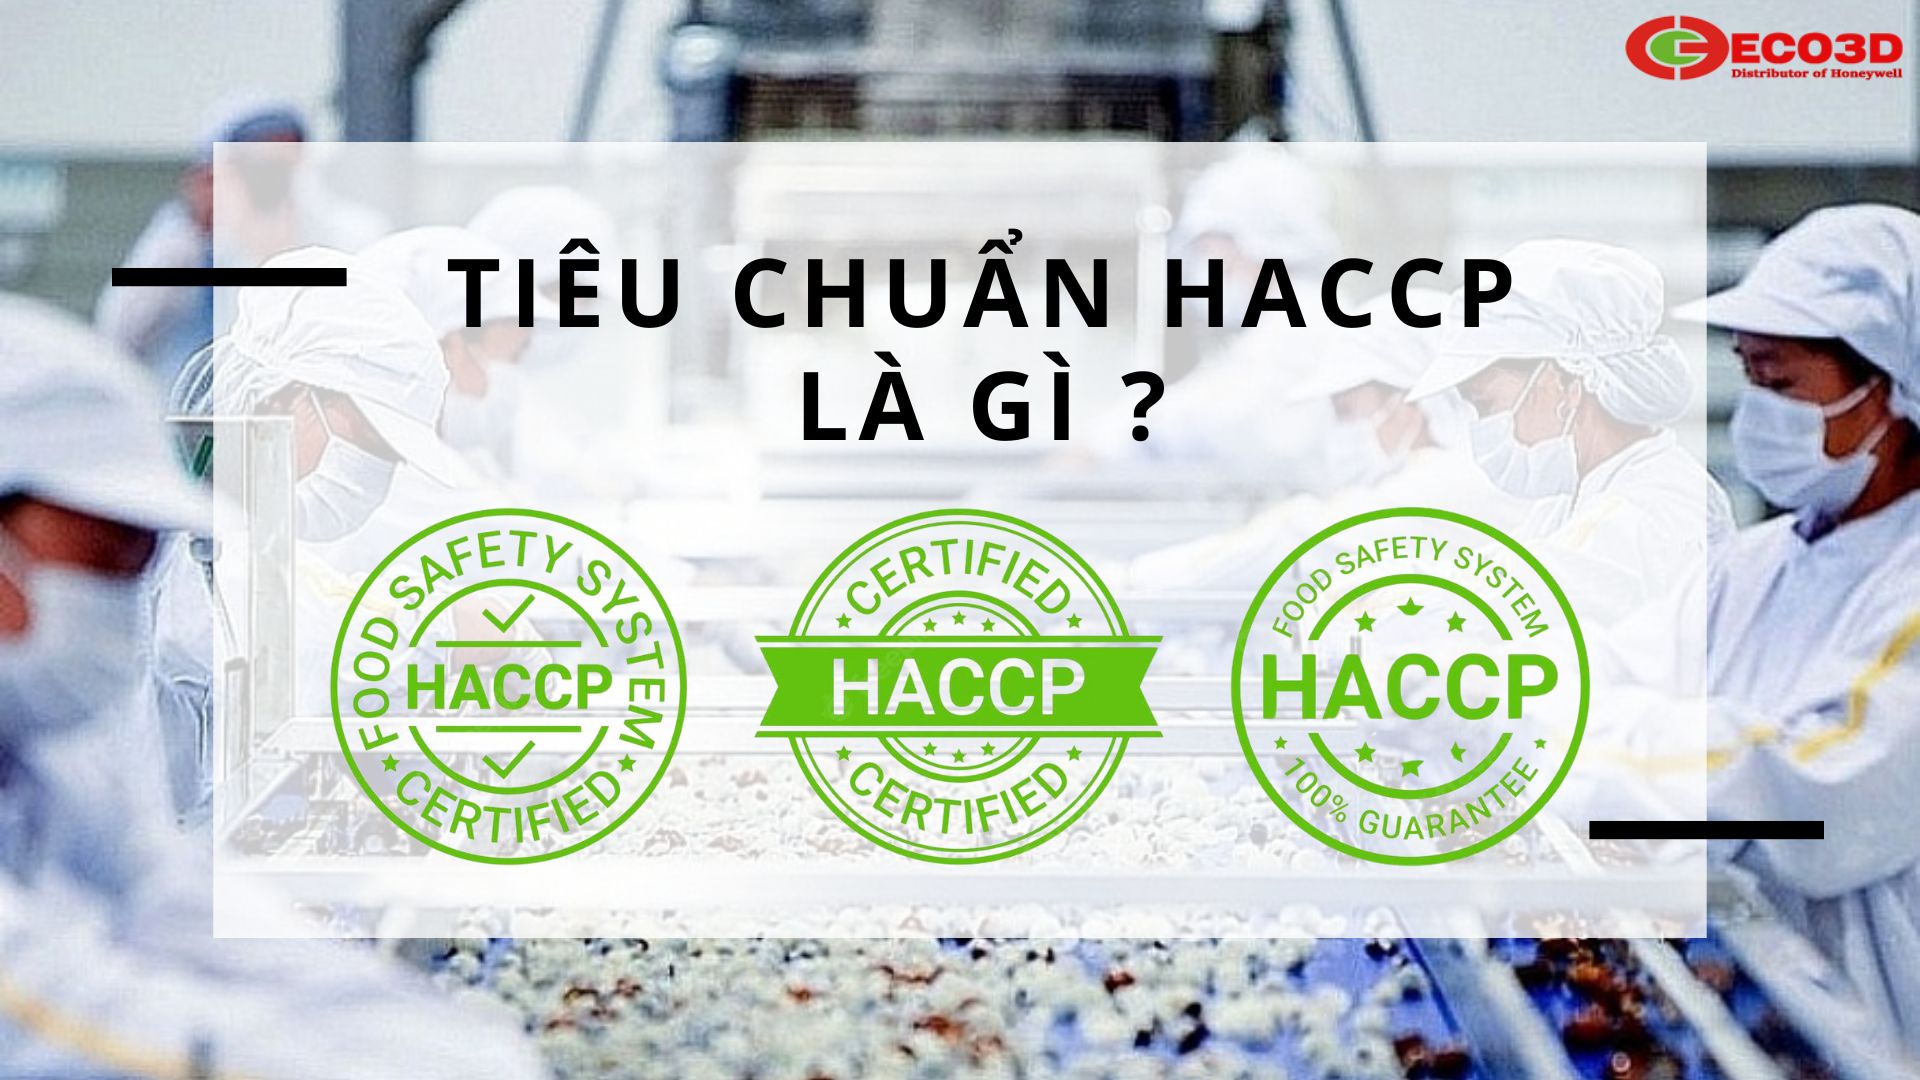 Tiêu Chuẩn HACCP Dành Cho Găng Tay Chế Biến Thực Phẩm Là Gì ?